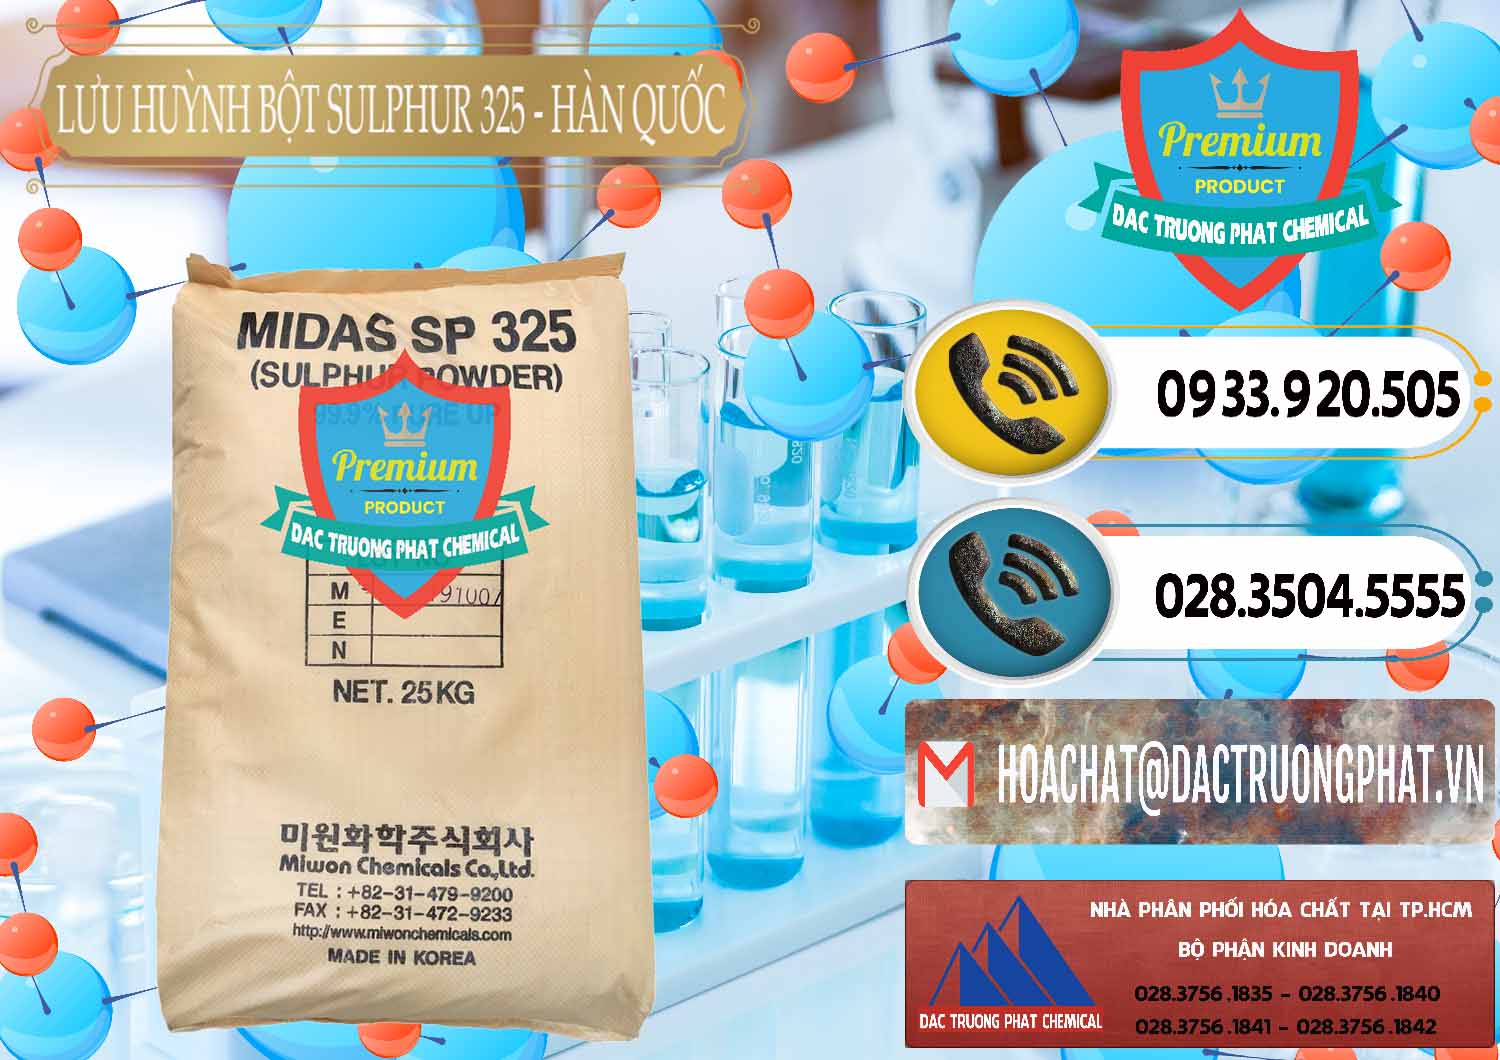 Nơi chuyên cung ứng & bán Lưu huỳnh Bột - Sulfur Powder Midas SP 325 Hàn Quốc Korea - 0198 - Đơn vị chuyên cung cấp _ nhập khẩu hóa chất tại TP.HCM - hoachatdetnhuom.vn